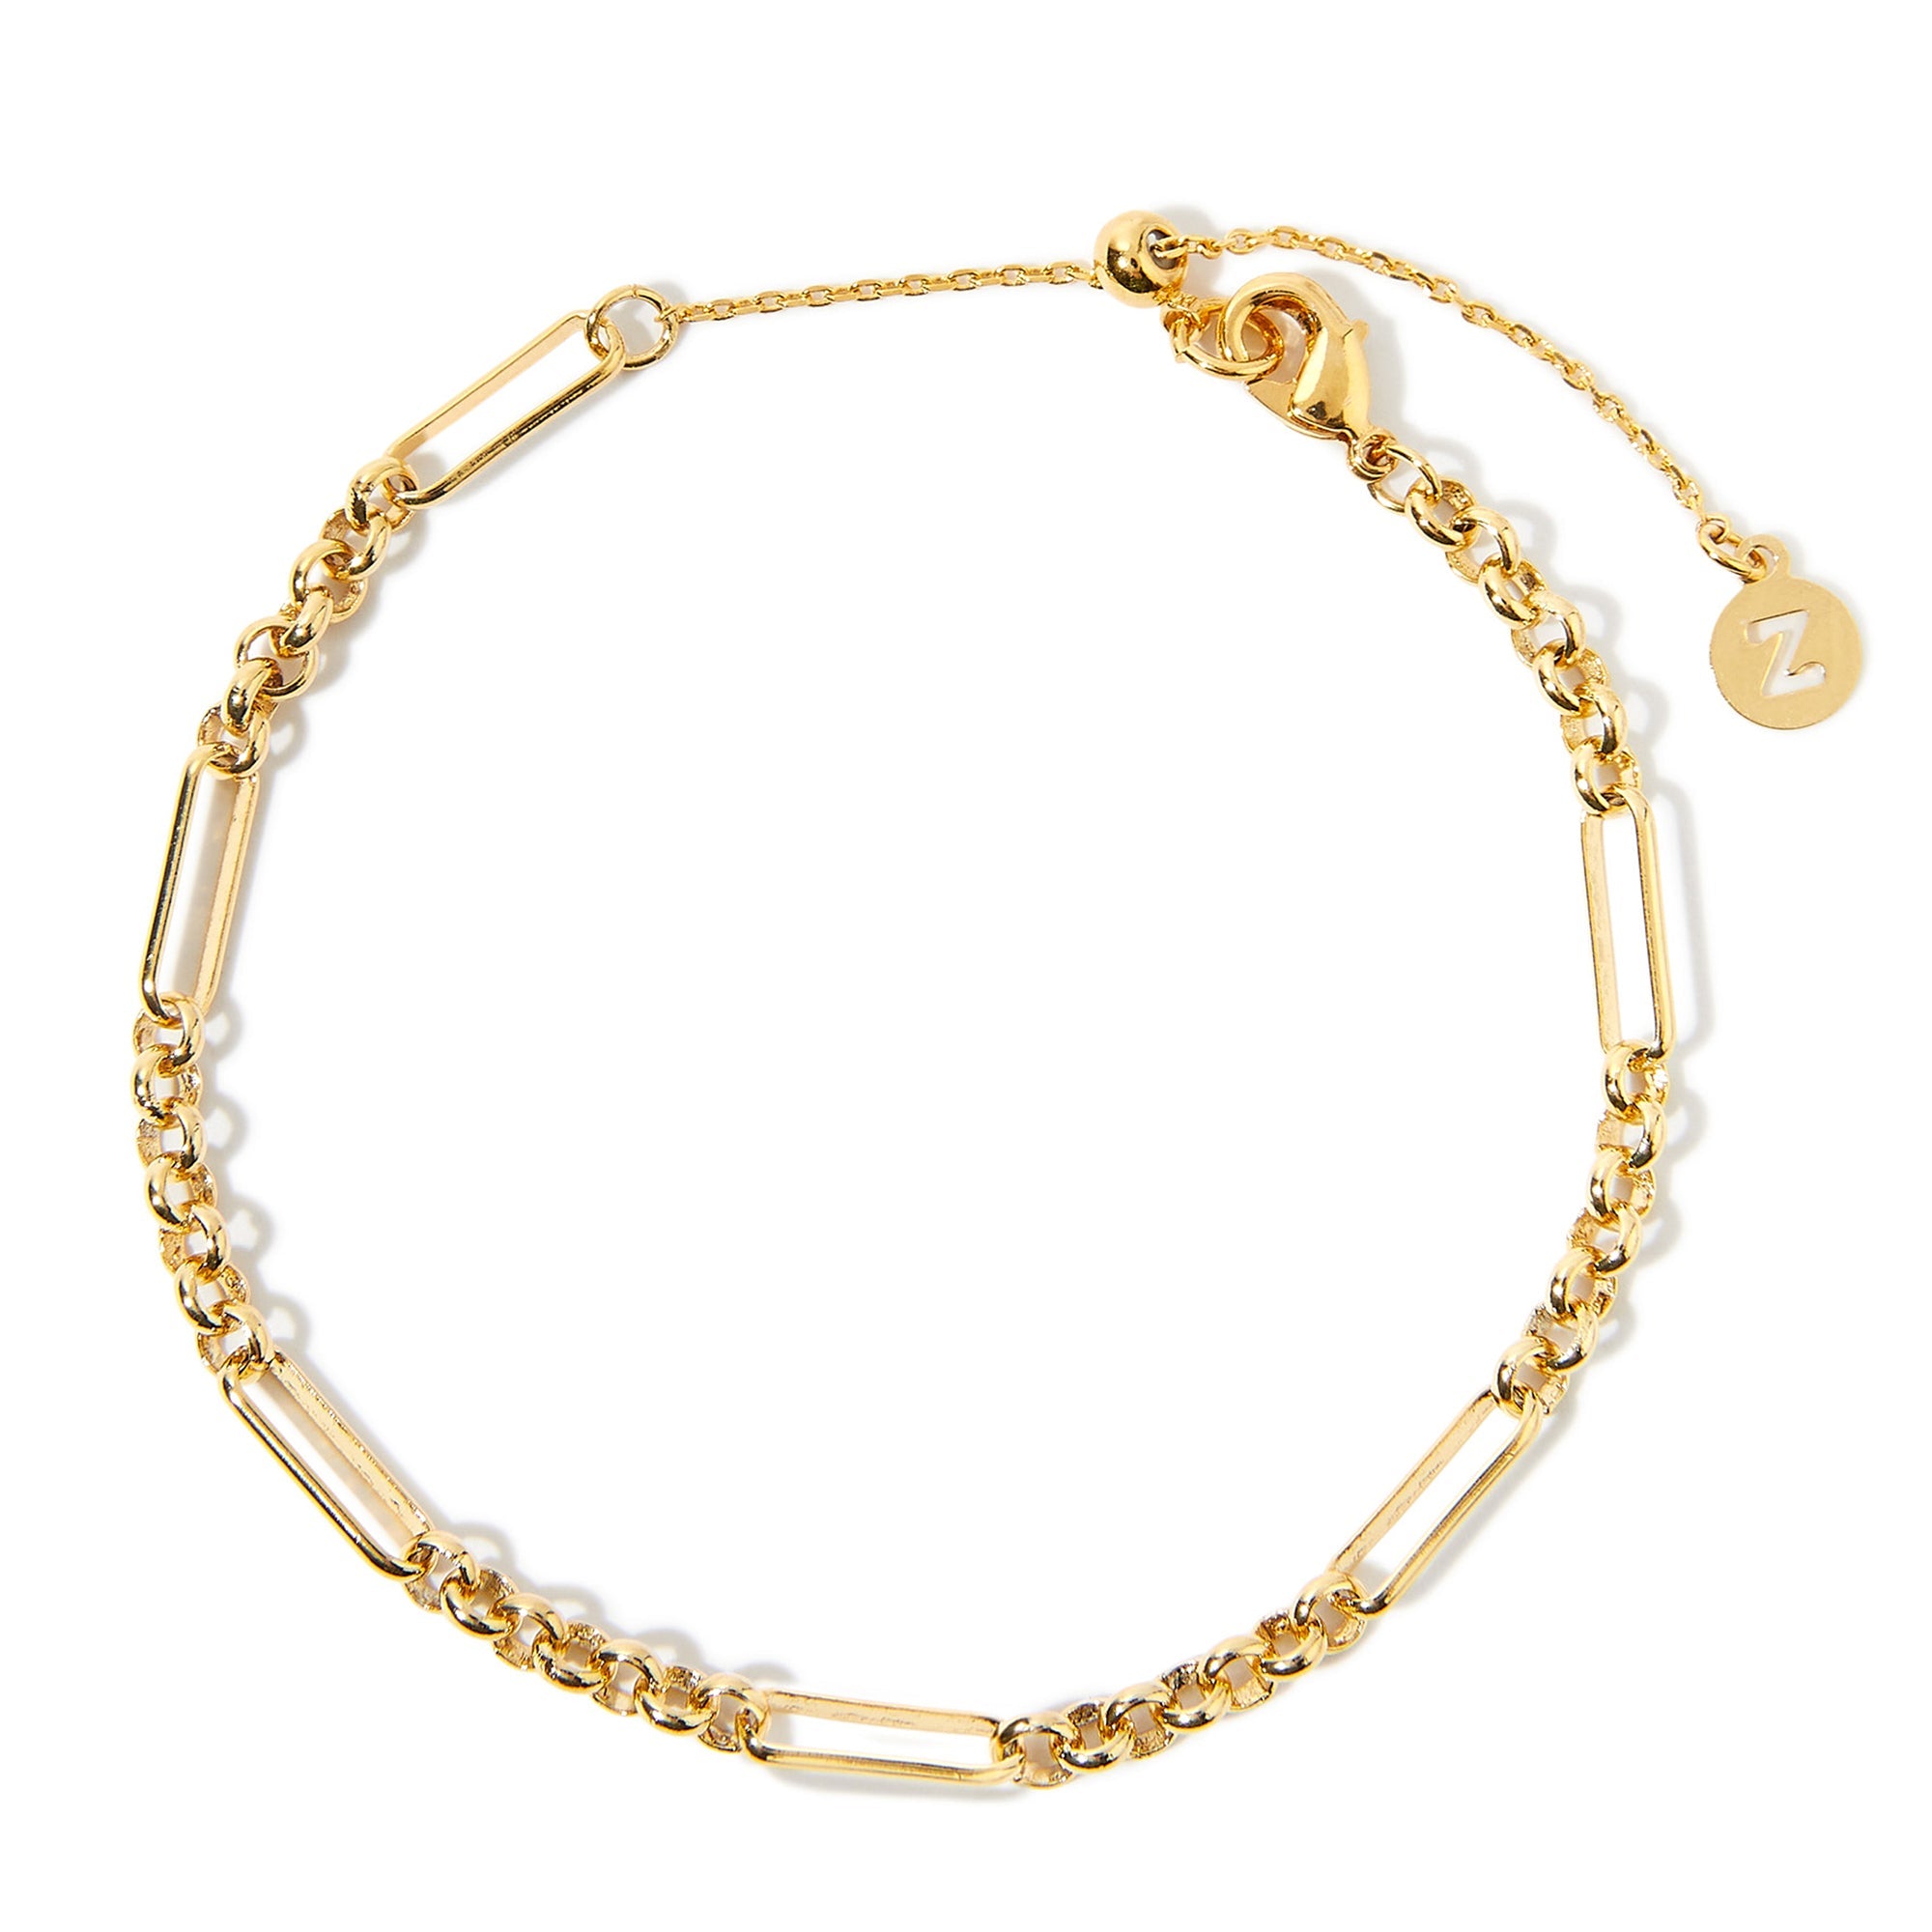 Gold Chain with Bracelet King Combo Stylish link Bracelet for Men  Boys  Women Girls